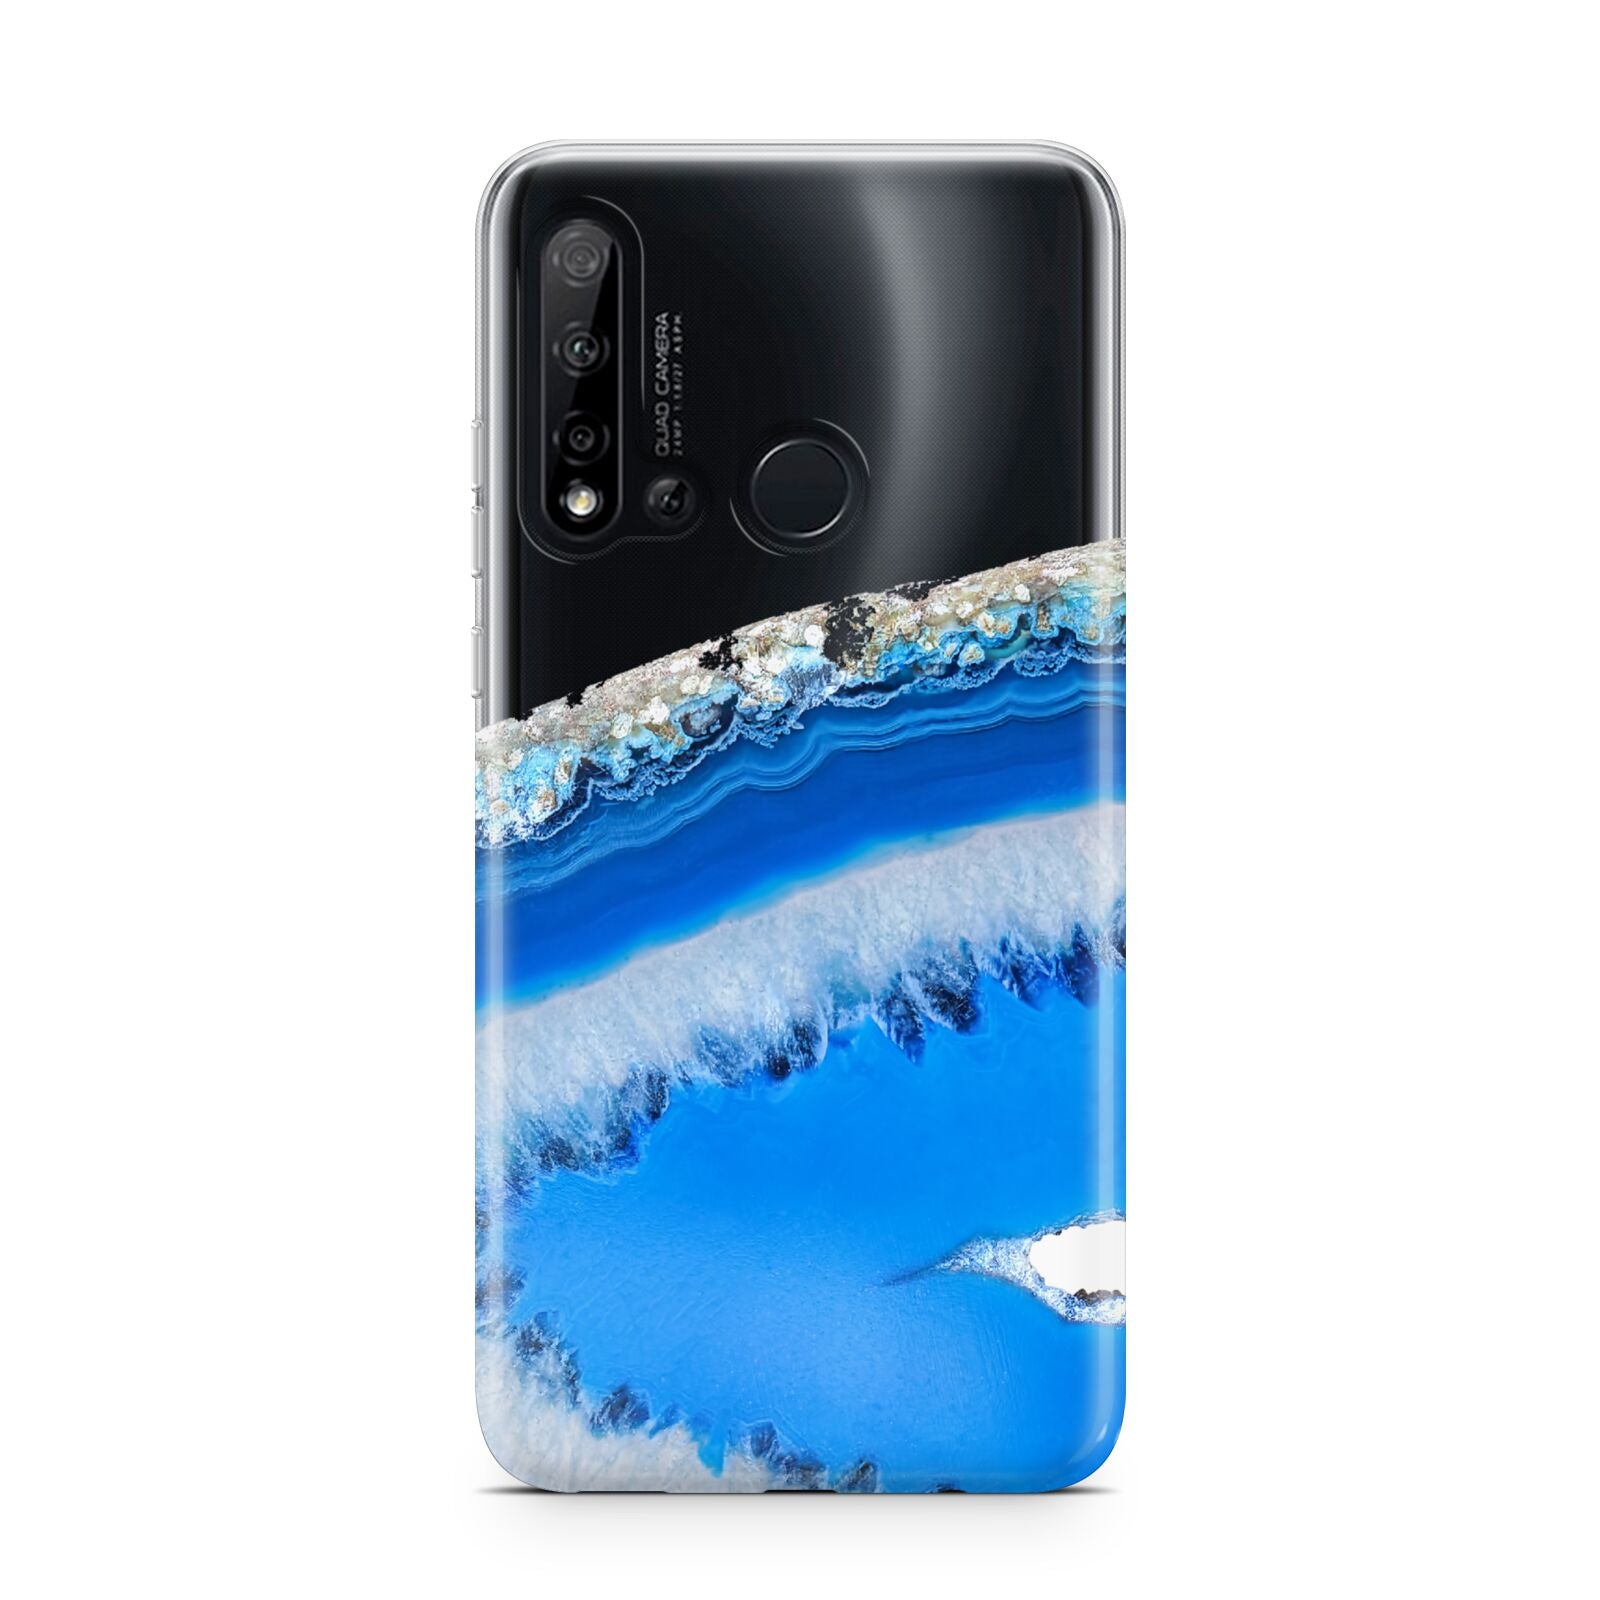 Agate Blue Huawei P20 Lite 5G Phone Case